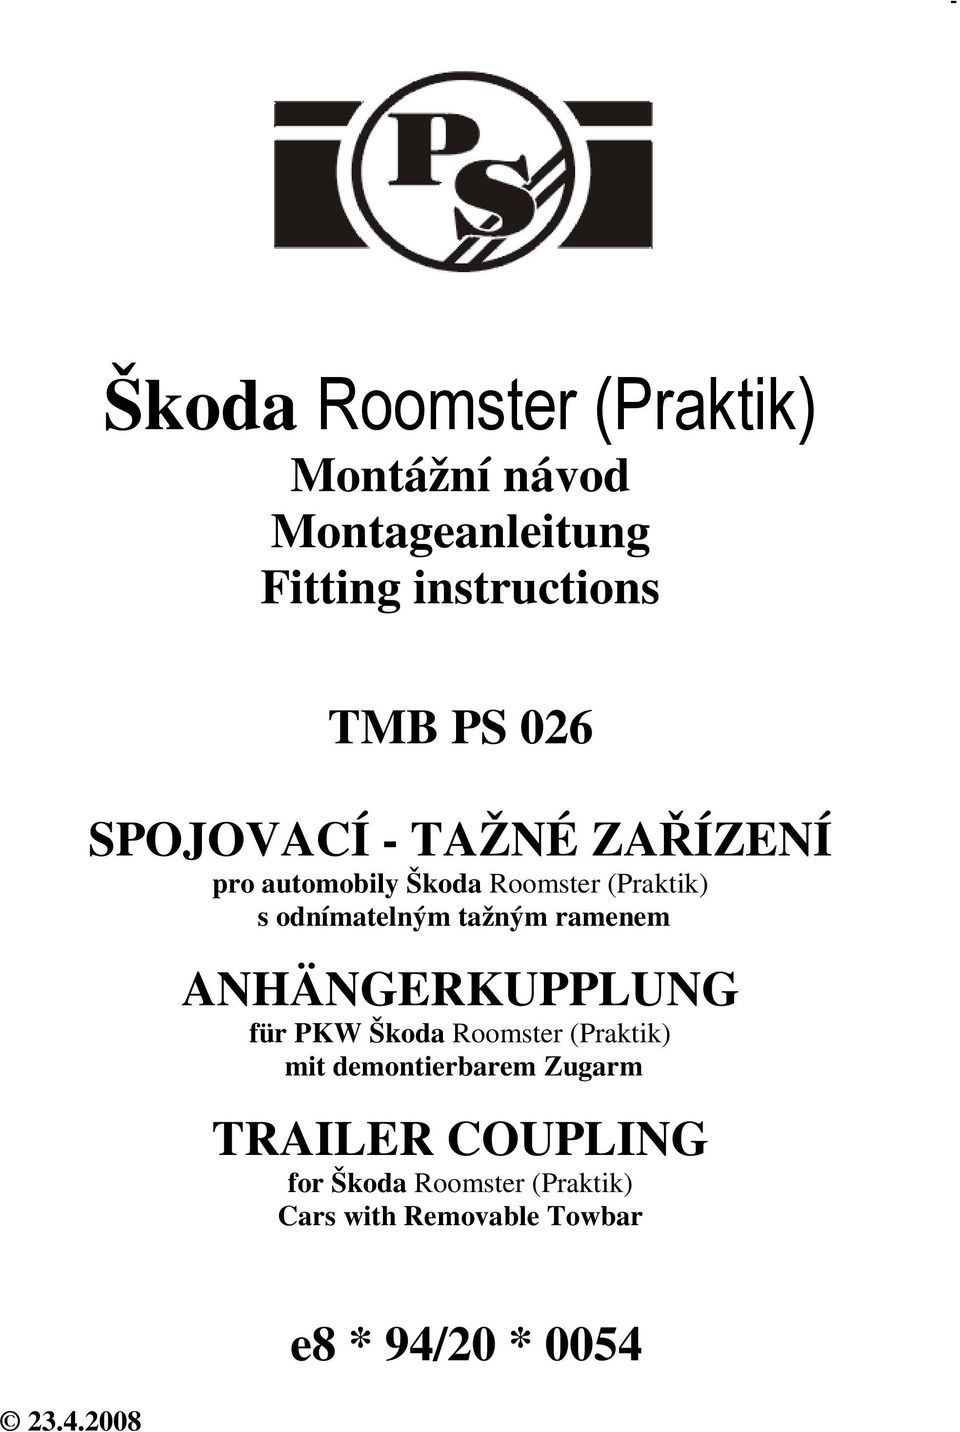 ANHÄNGERKUPPLUNG für PKW Škoda Roomster (Praktik) mit demontierbarem Zugarm TRAILER